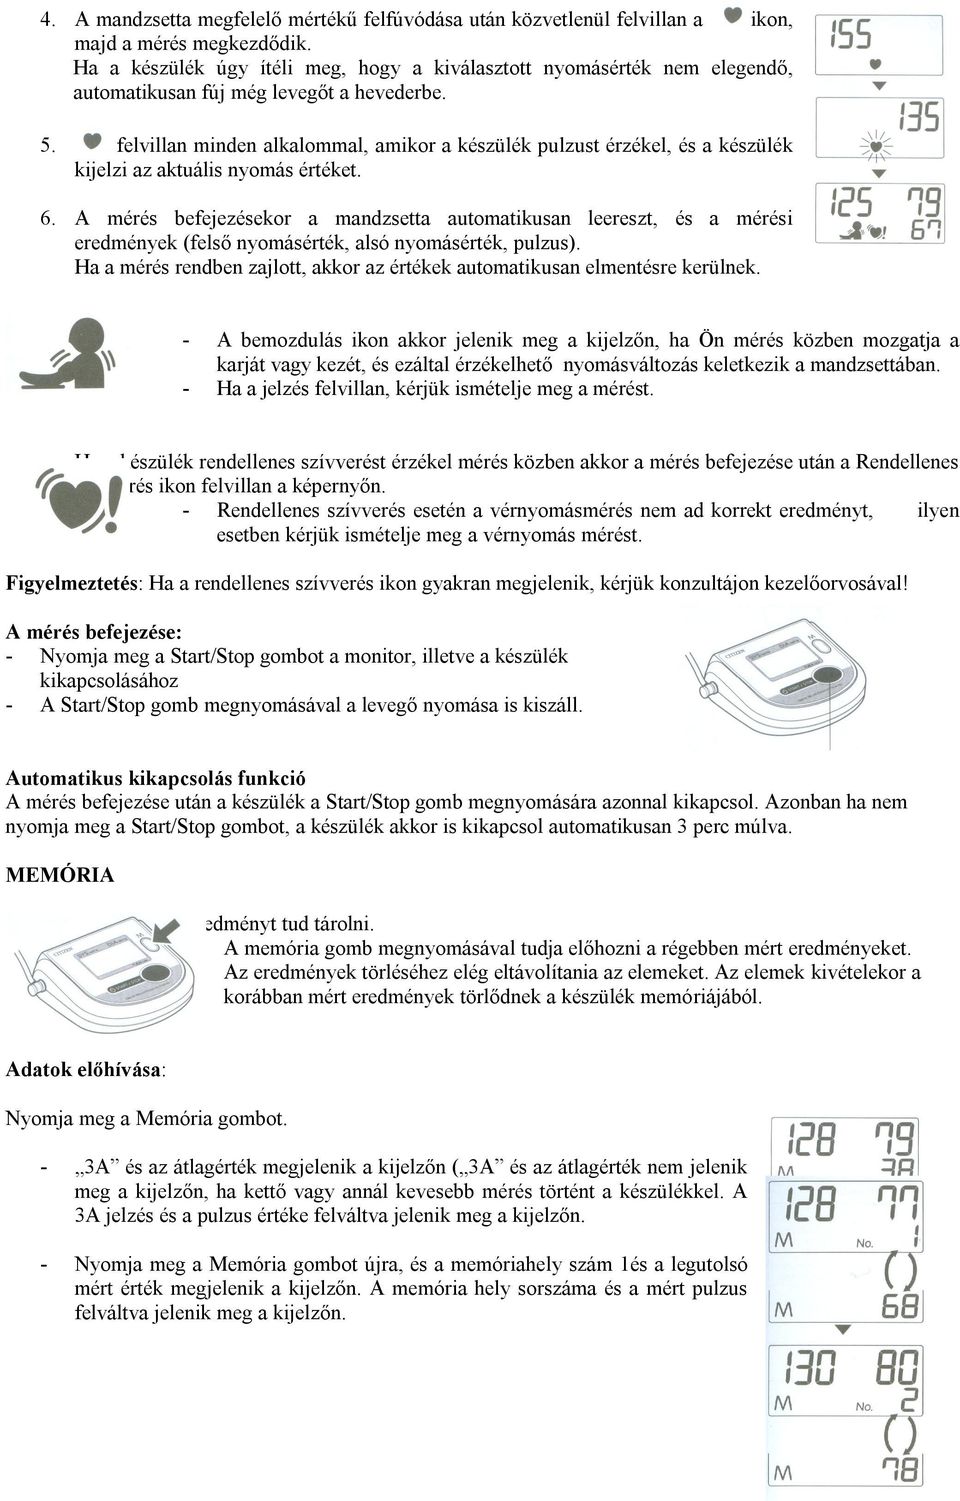 CITIZEN. Digitális, automata felkaros vérnyomásmérő készülék GYCH-453  HASZNÁLATI UTASÍTÁS - PDF Ingyenes letöltés